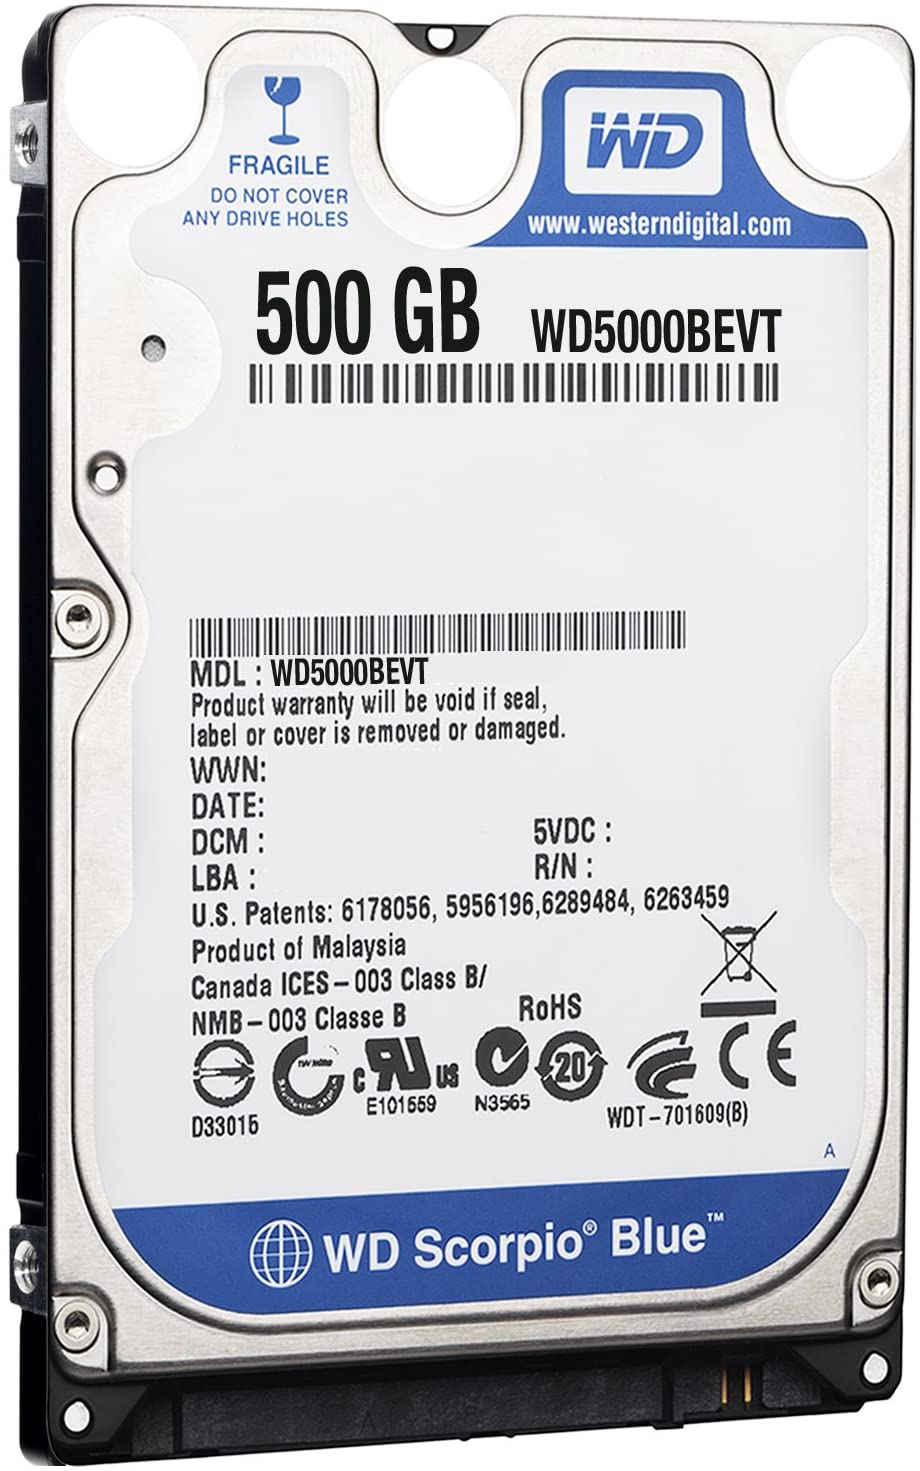 Western Digital Scorpio Blue 500 GB